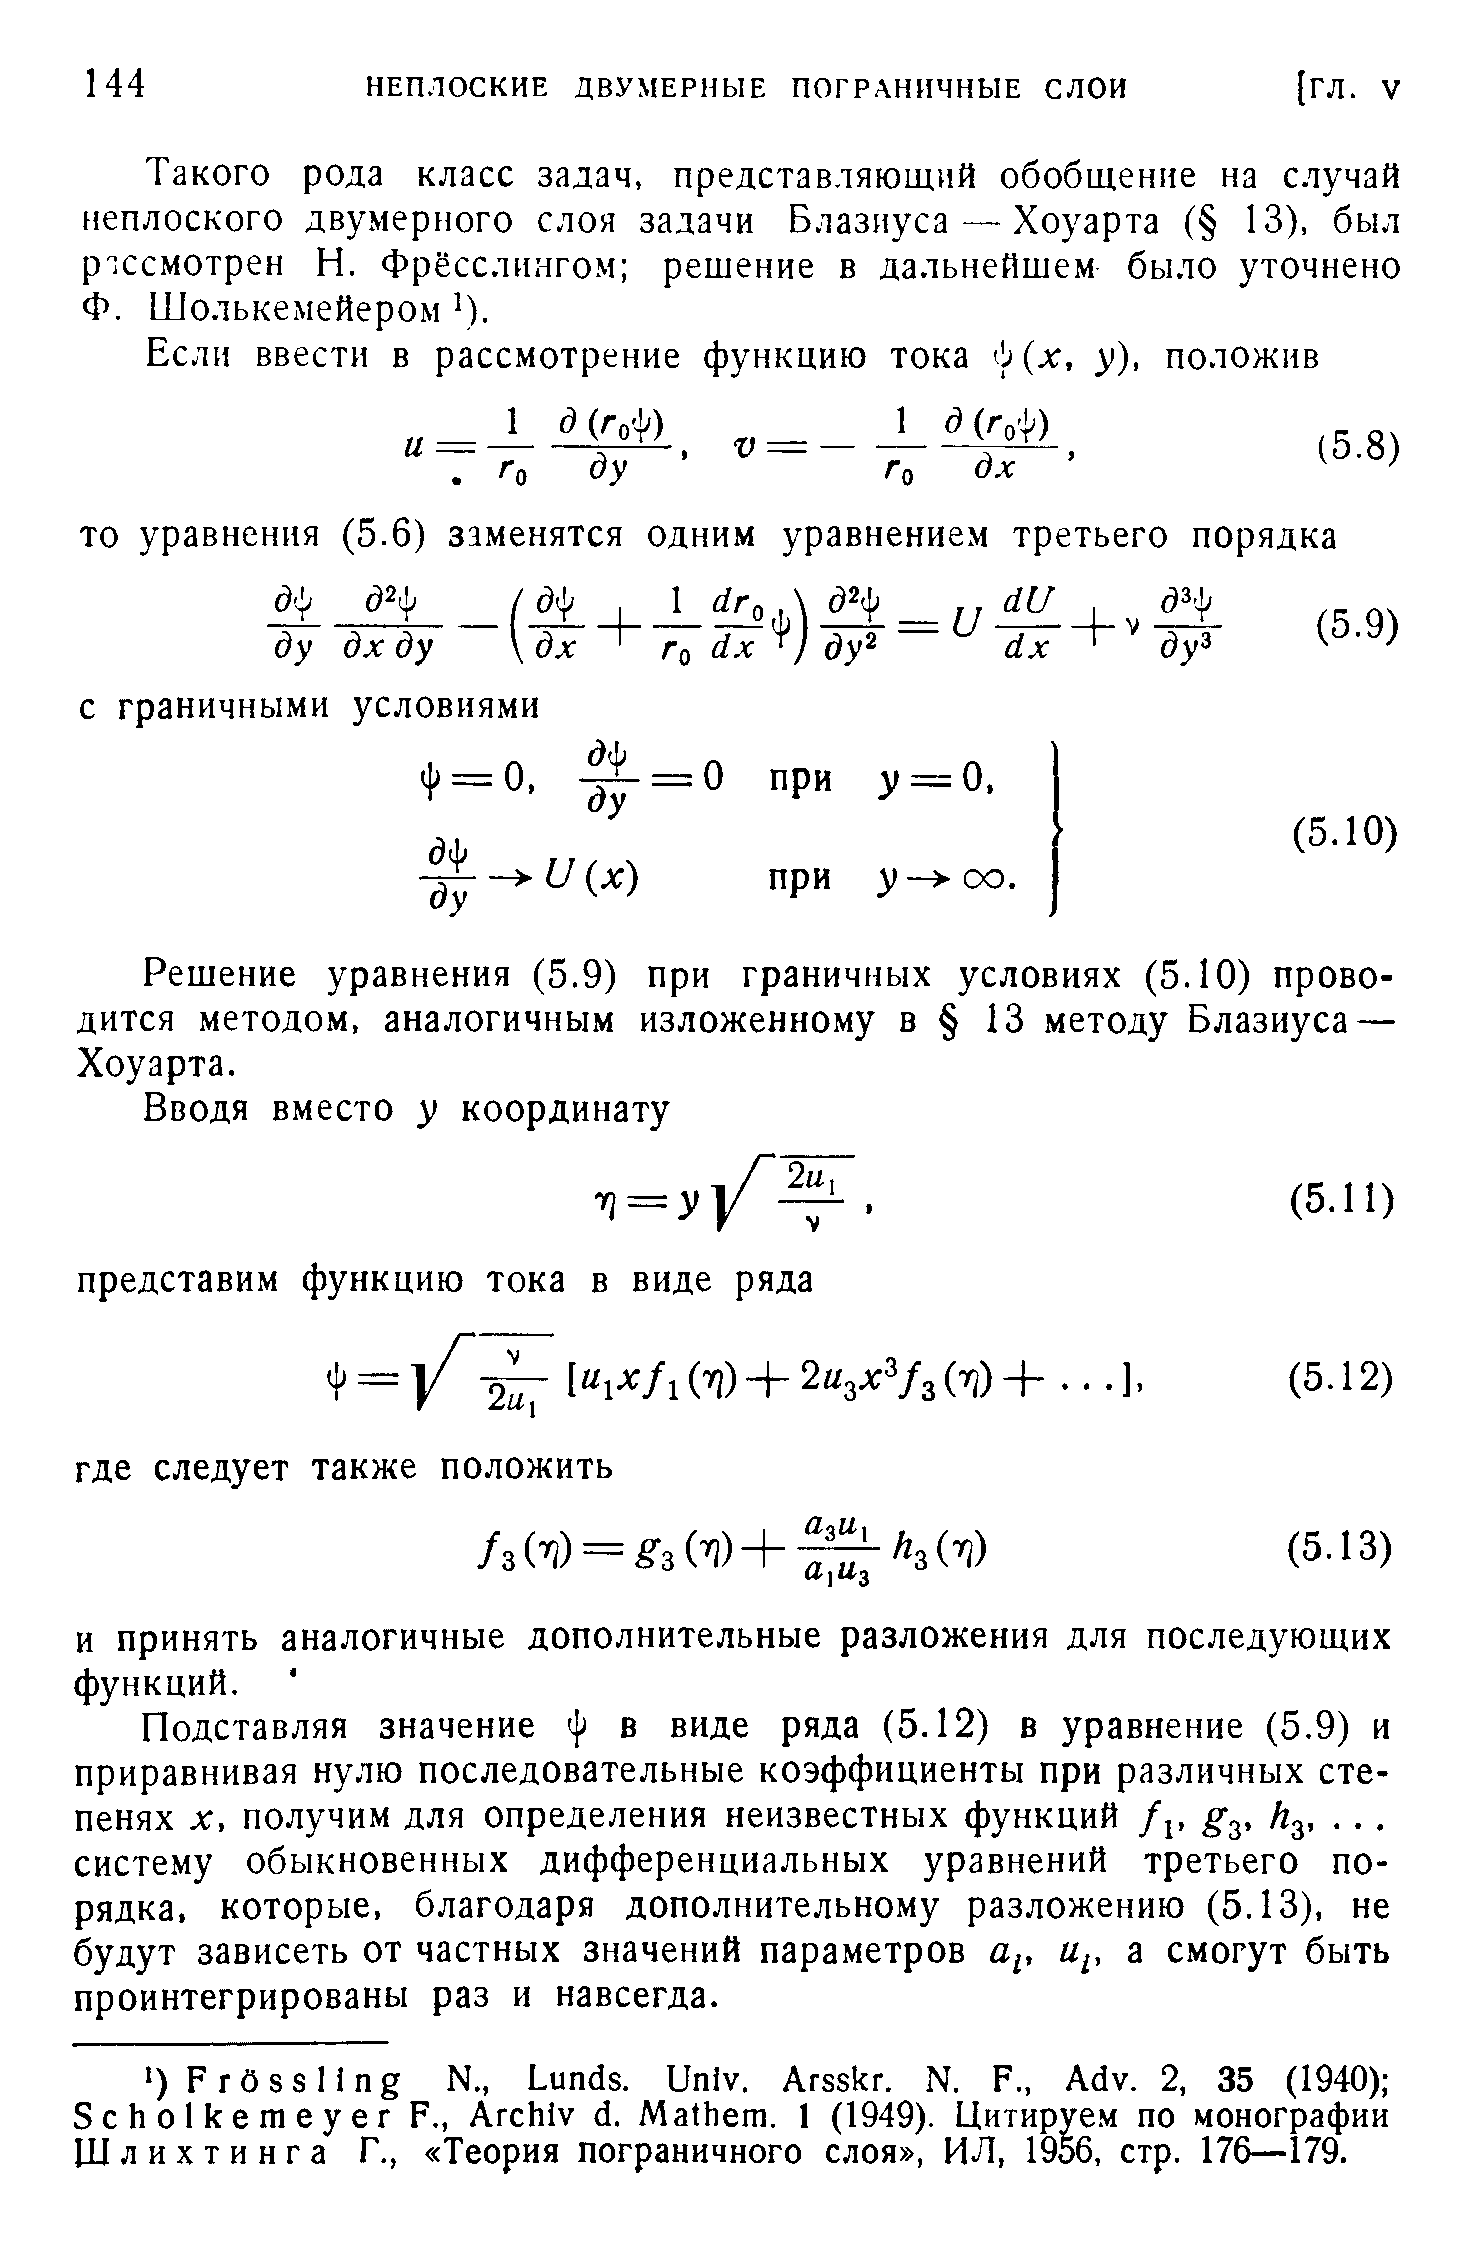 Решение уравнения (5.9) при граничных условиях (5.10) проводится методом, аналогичным изложенному в 13 методу Блазиуса — Хоуарта.